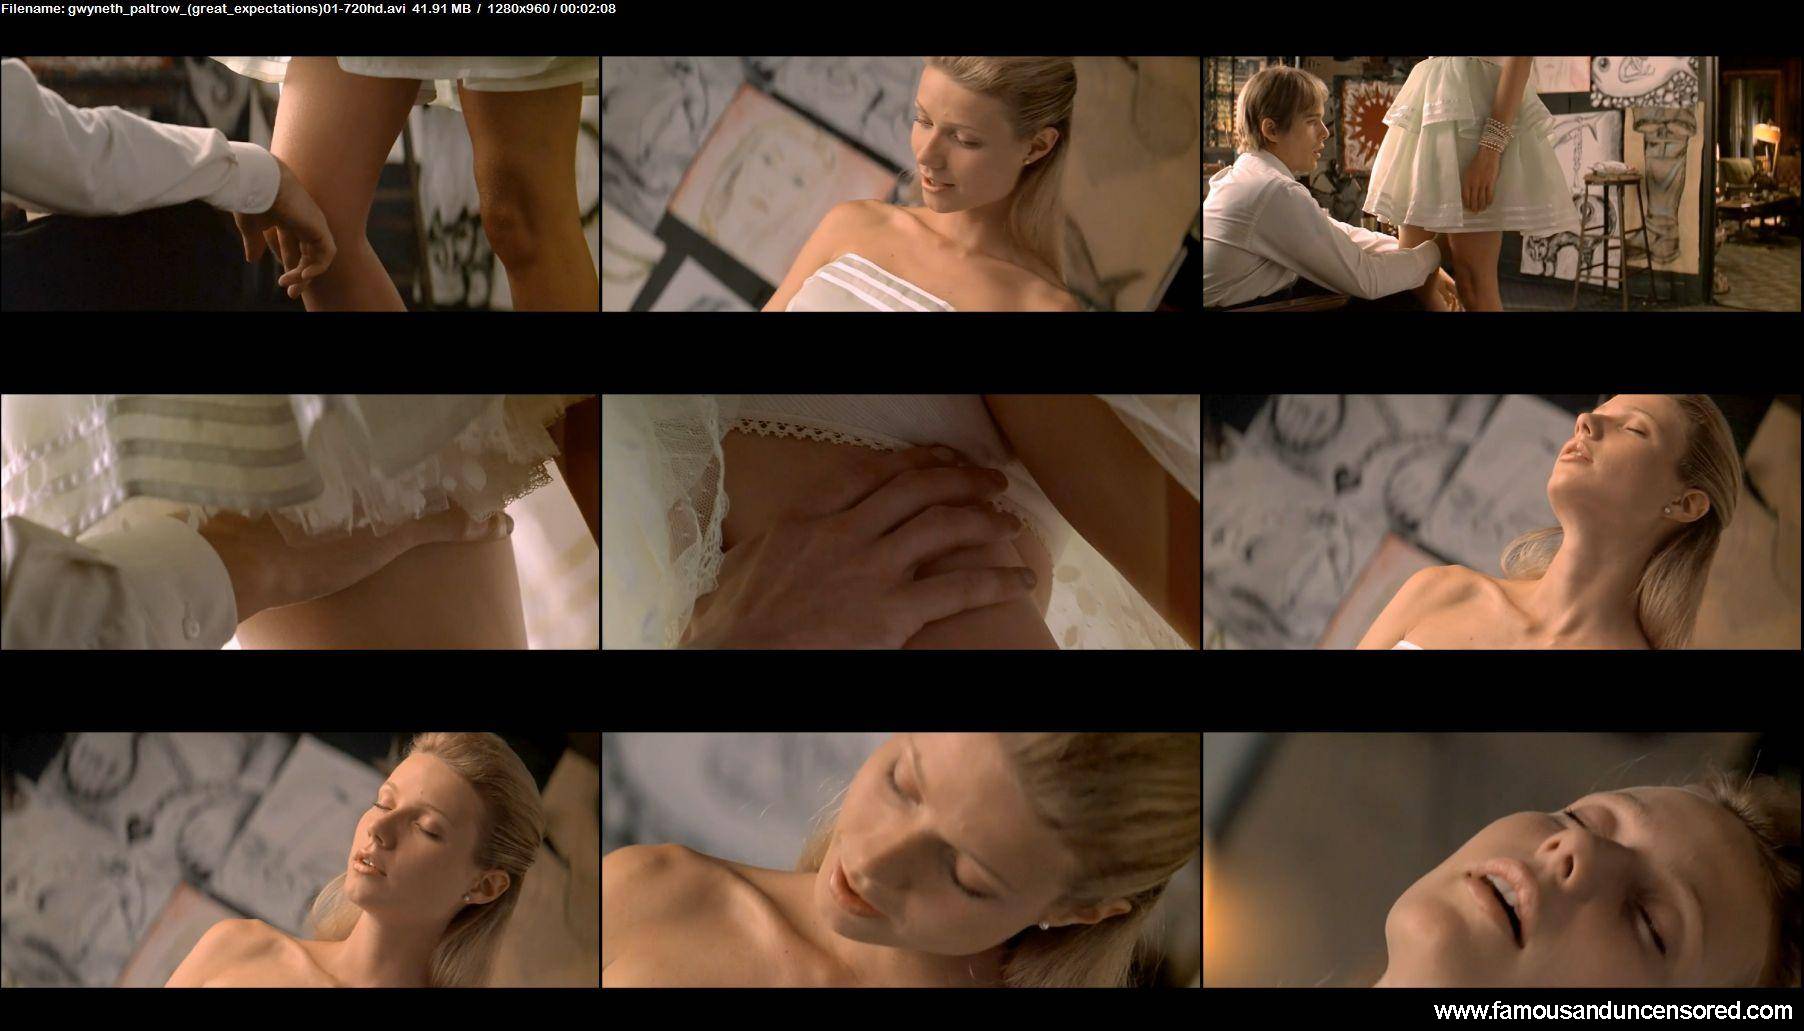 Gwyneth paltrow sex scenes